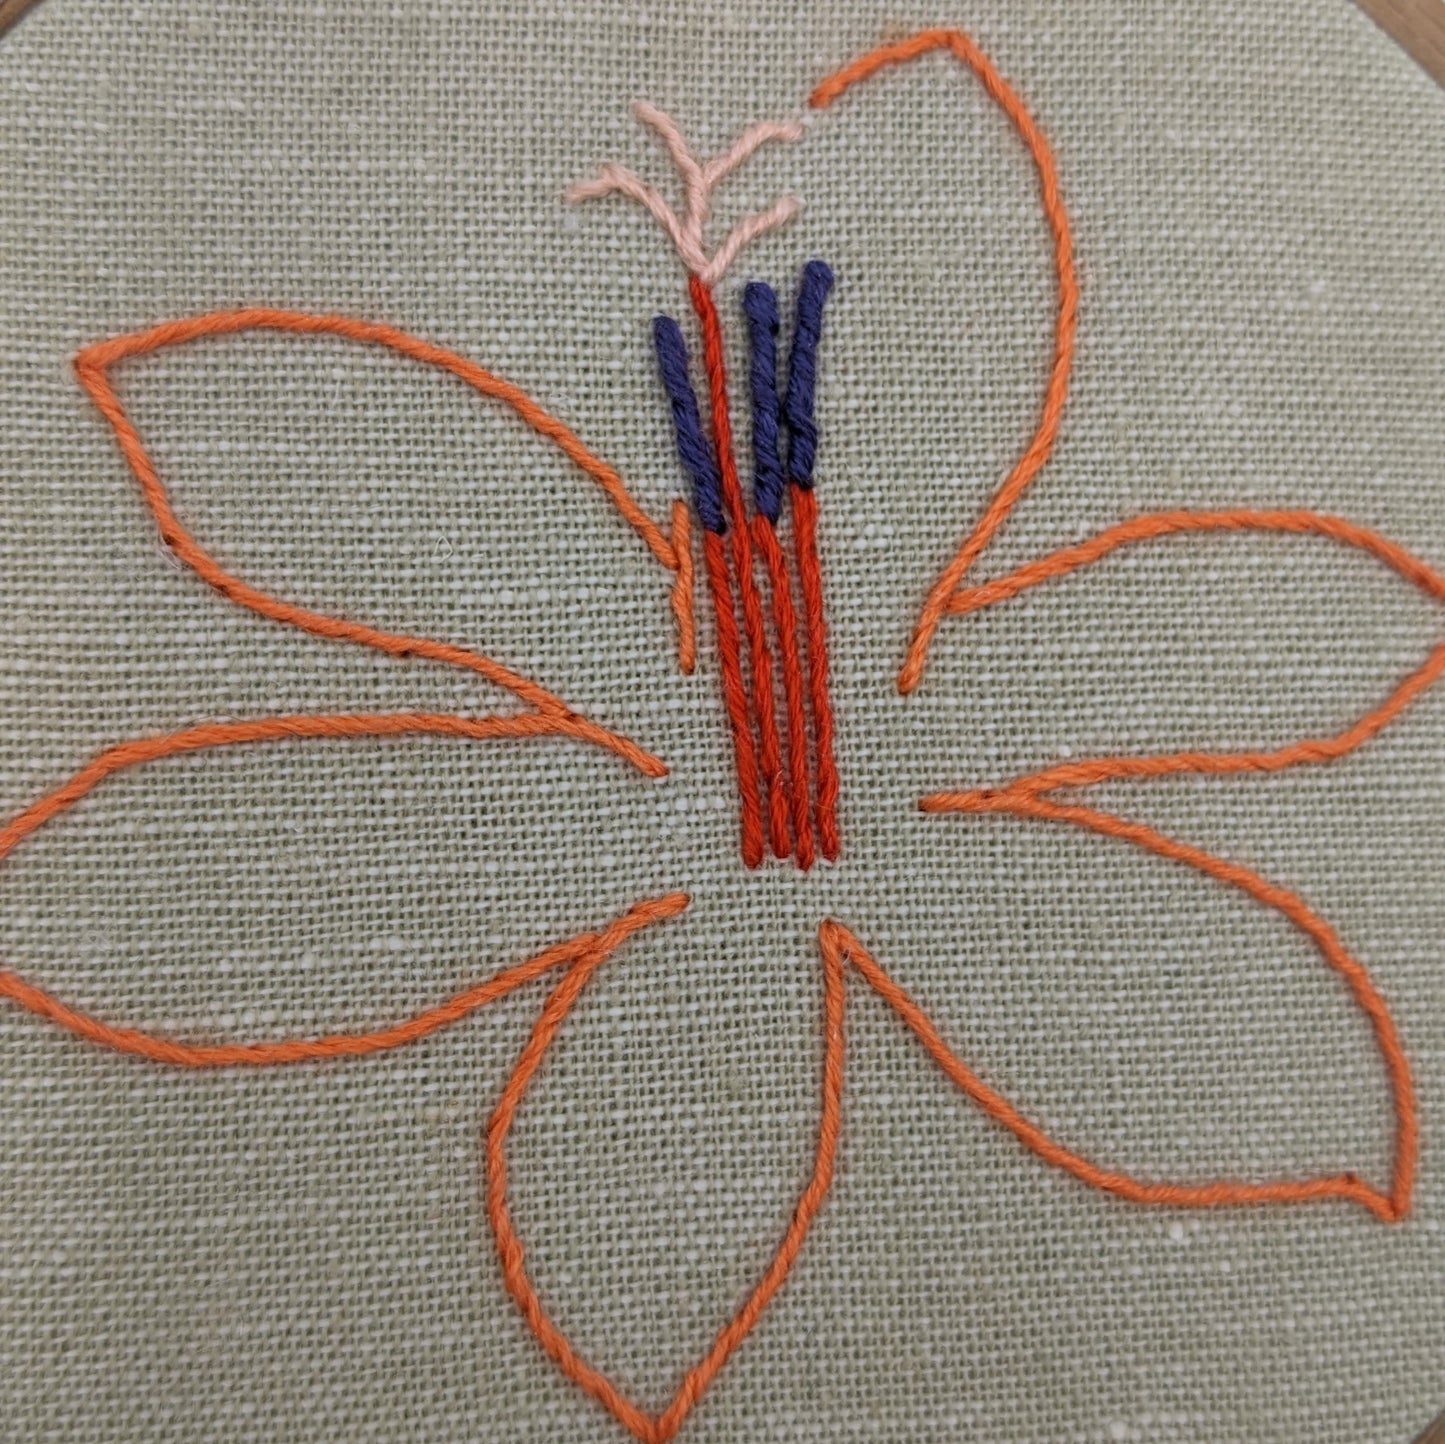 Watsonia Flower Embroidery Hoop Art